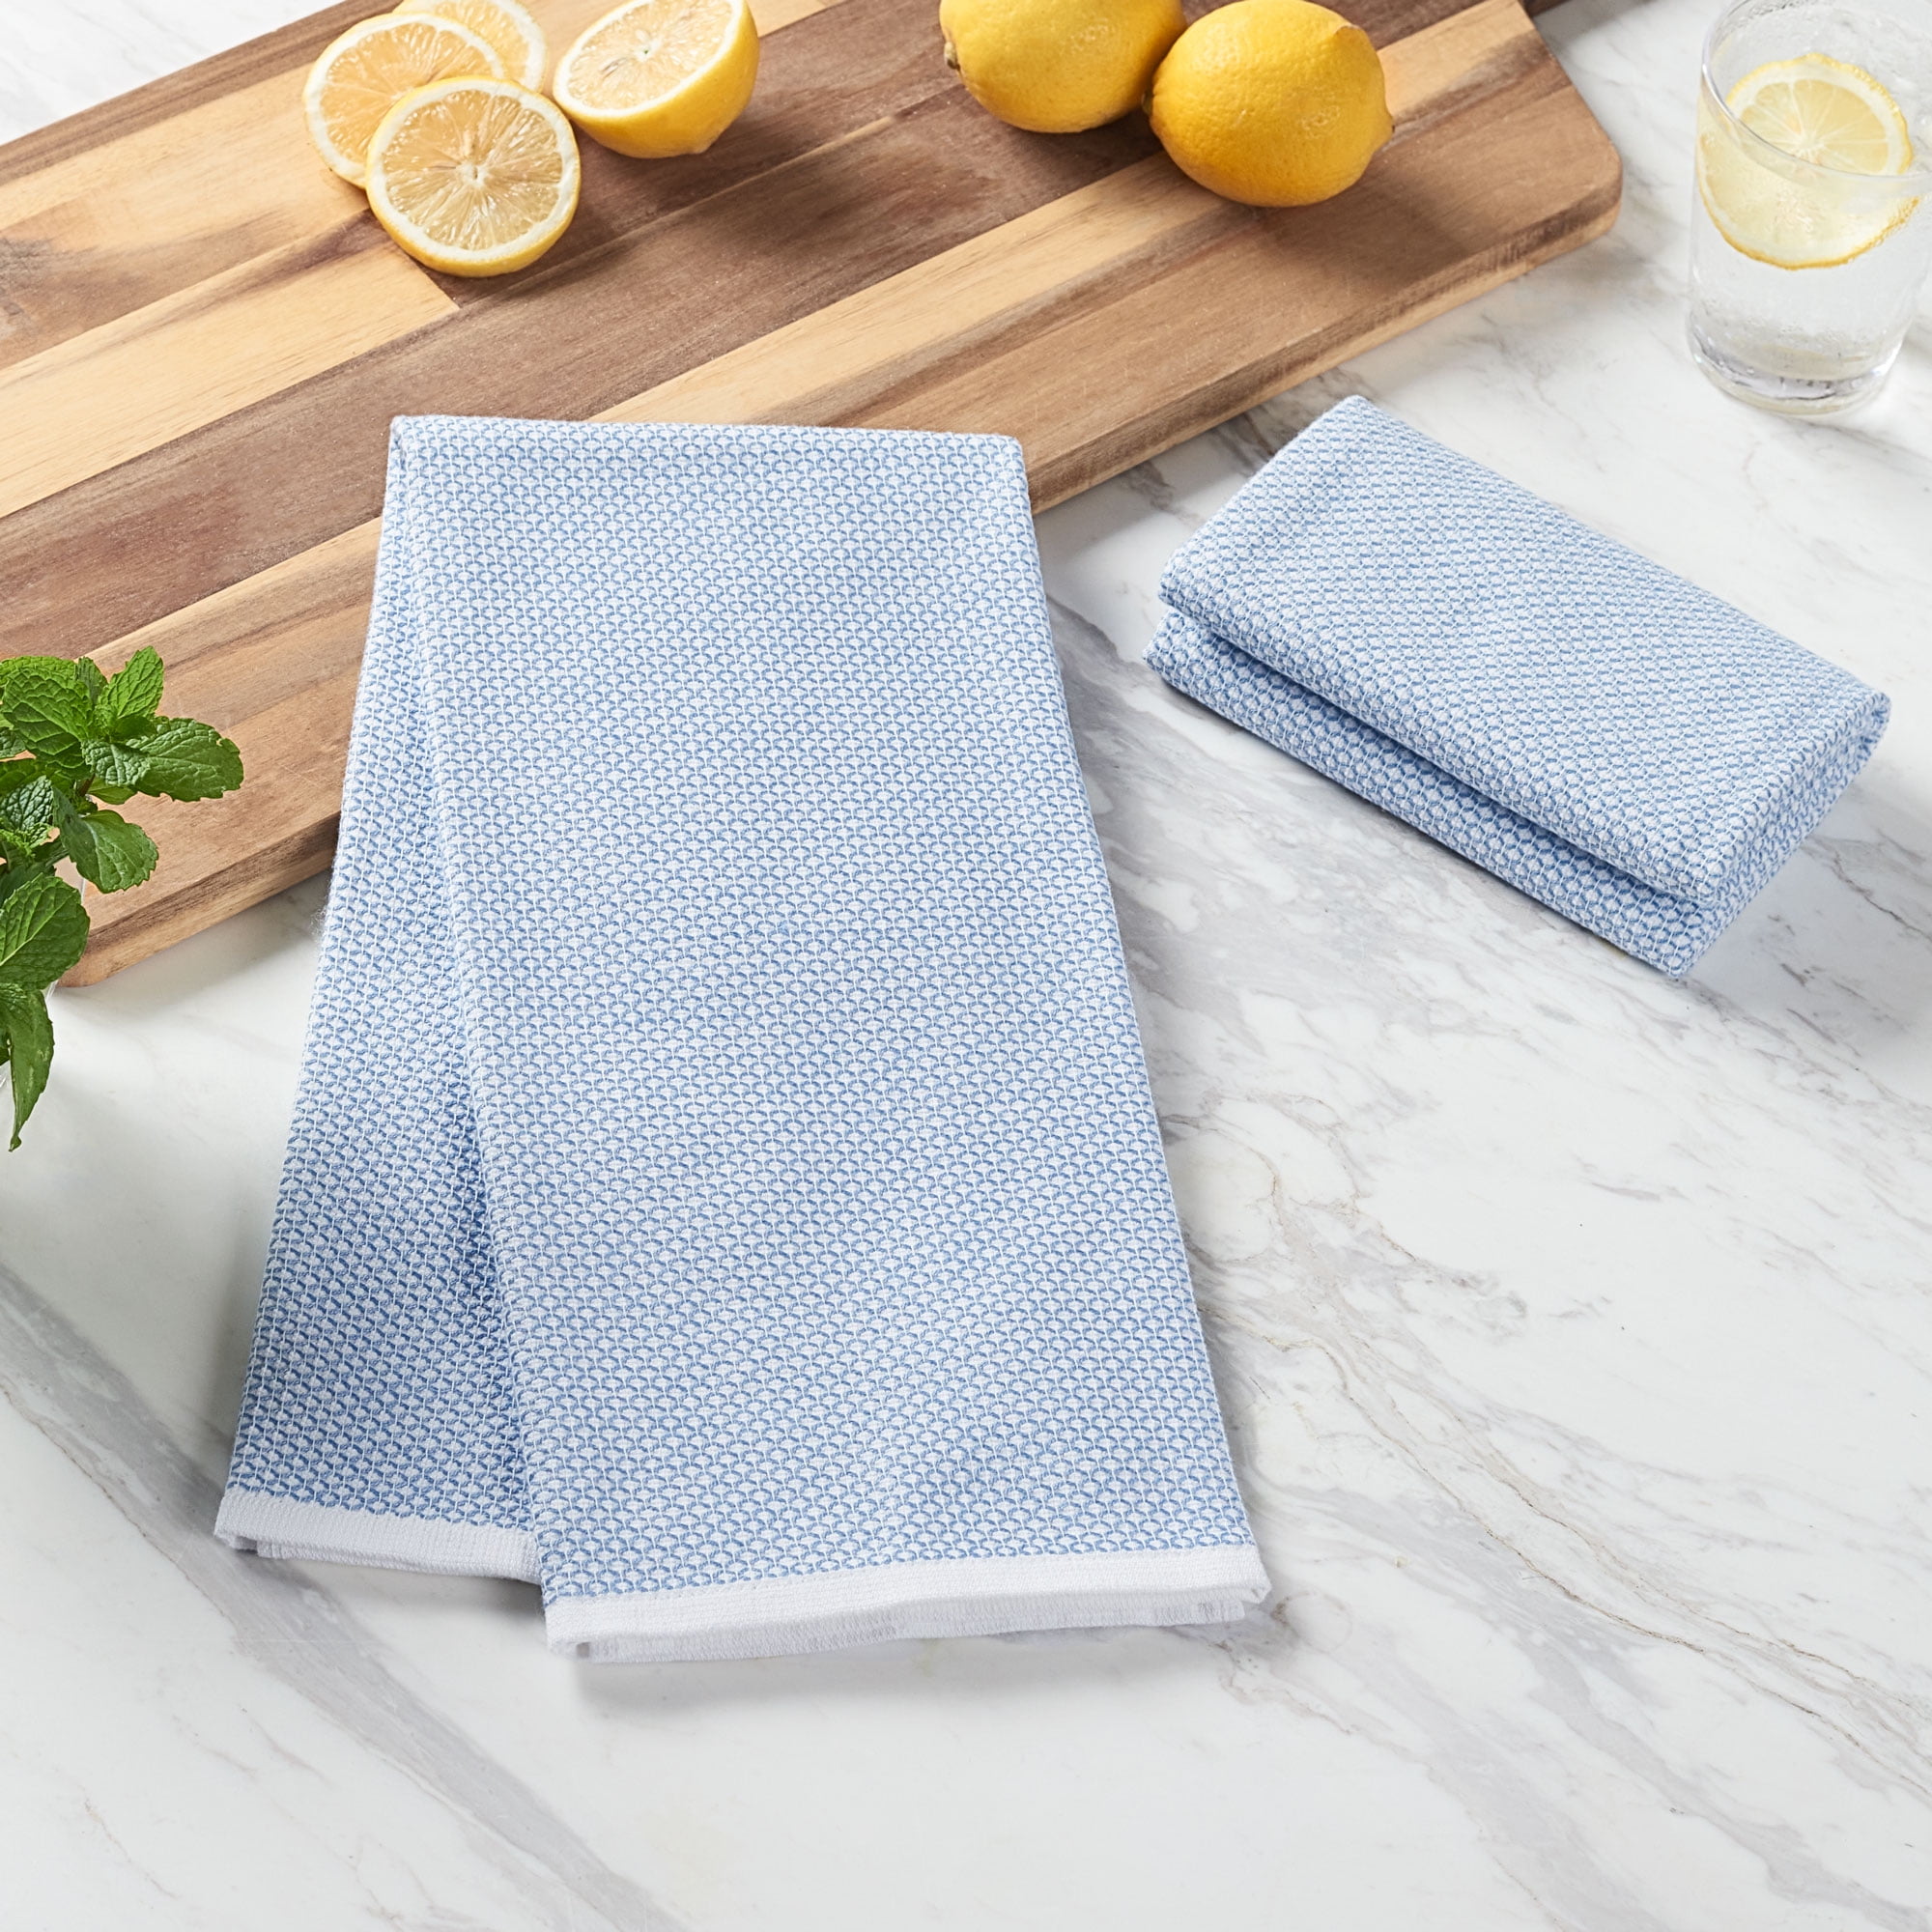 Grains Linen Kitchen Towels (set of 2)